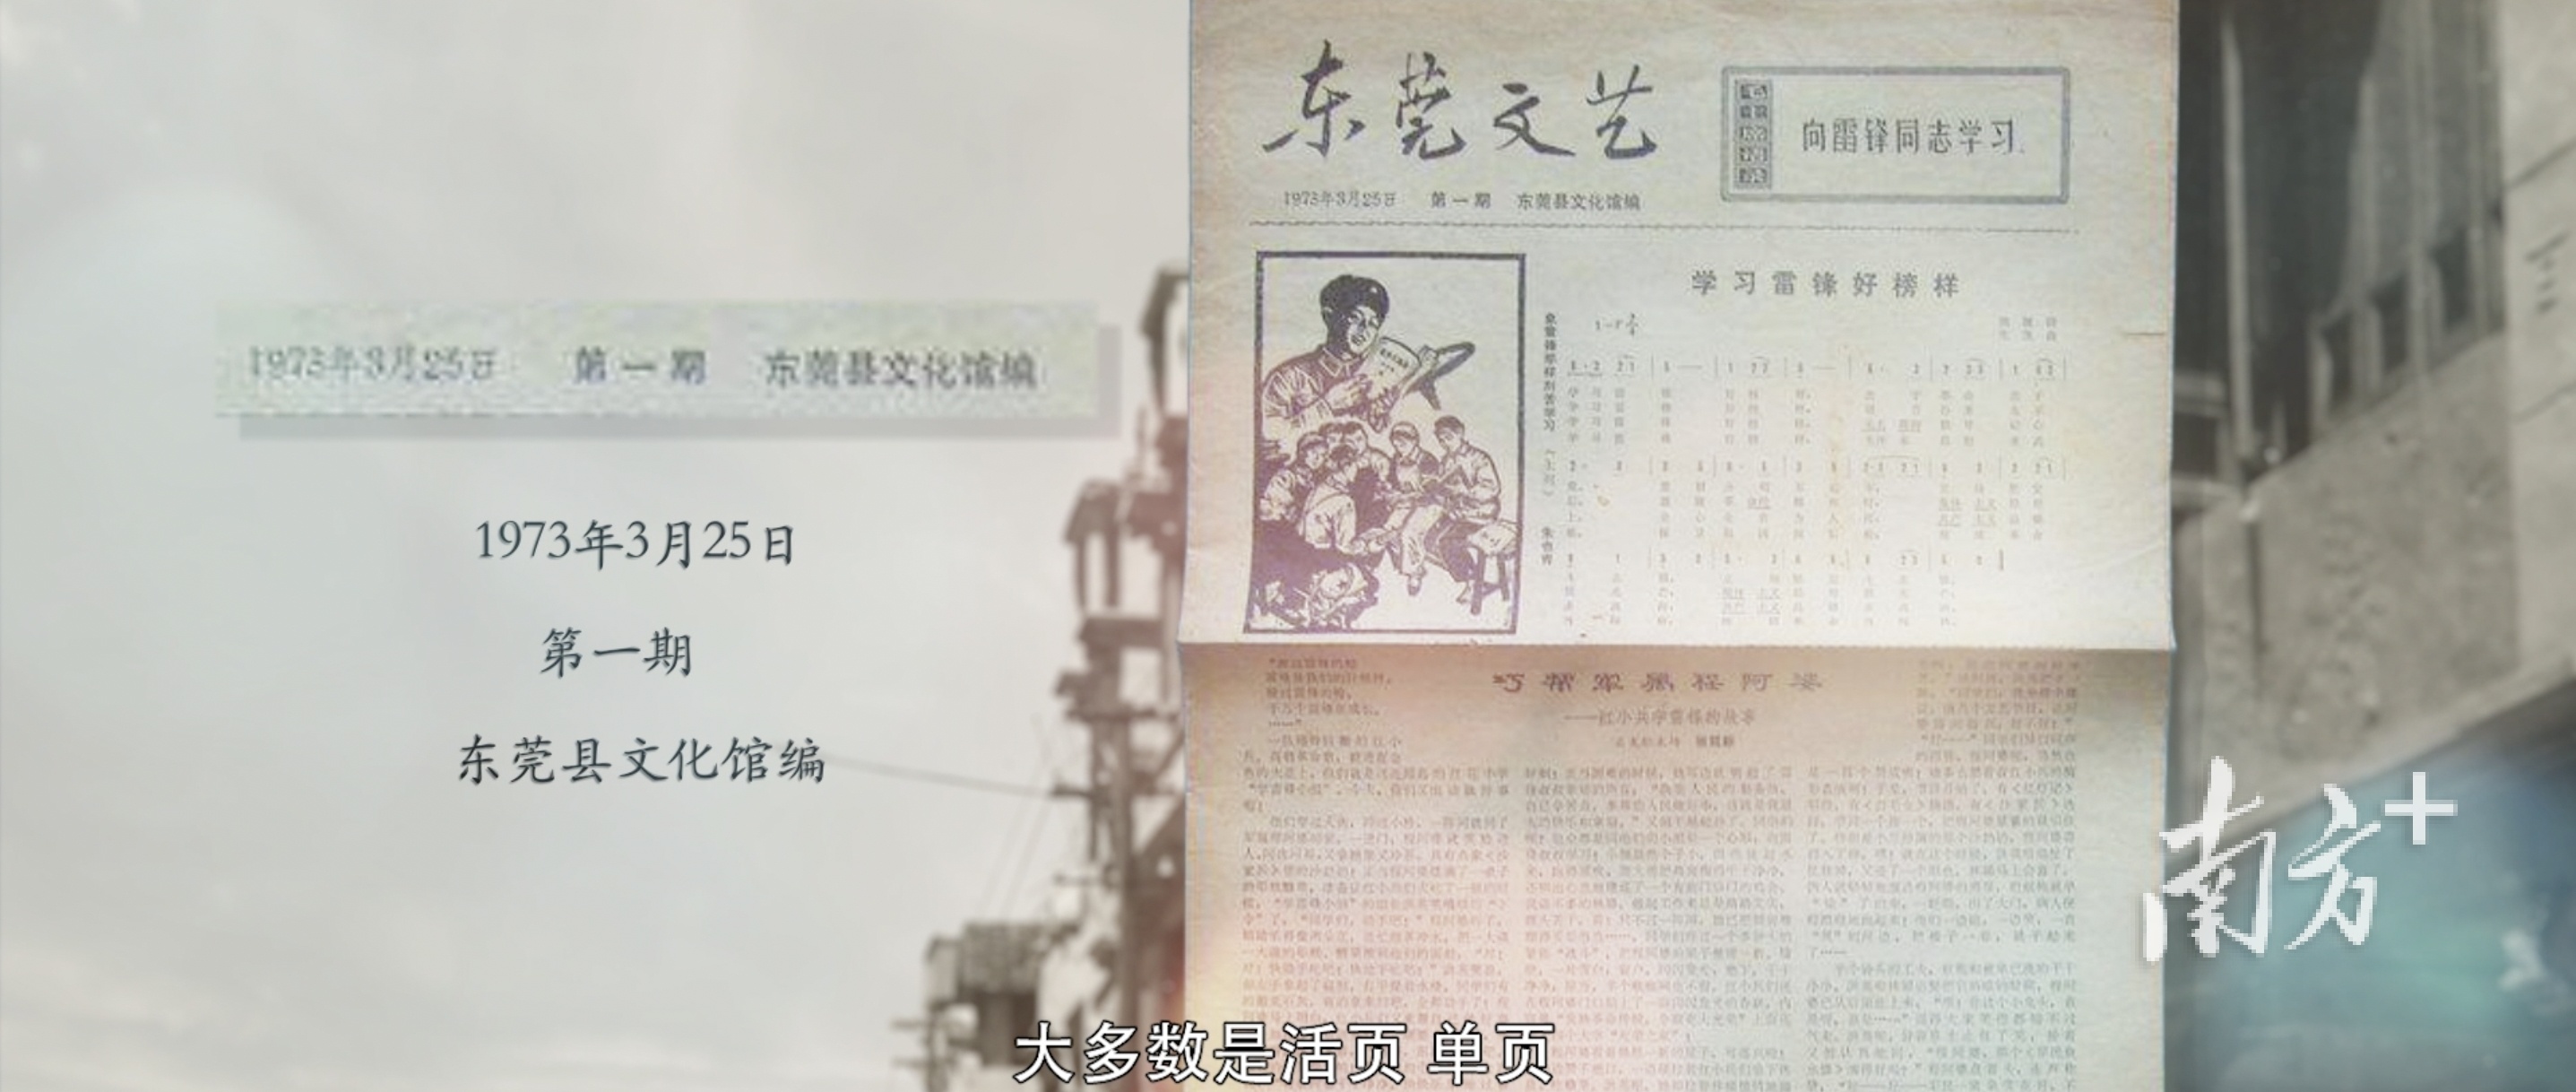 1973年3月25日，东莞县文化馆发表《东莞文艺》第一期。